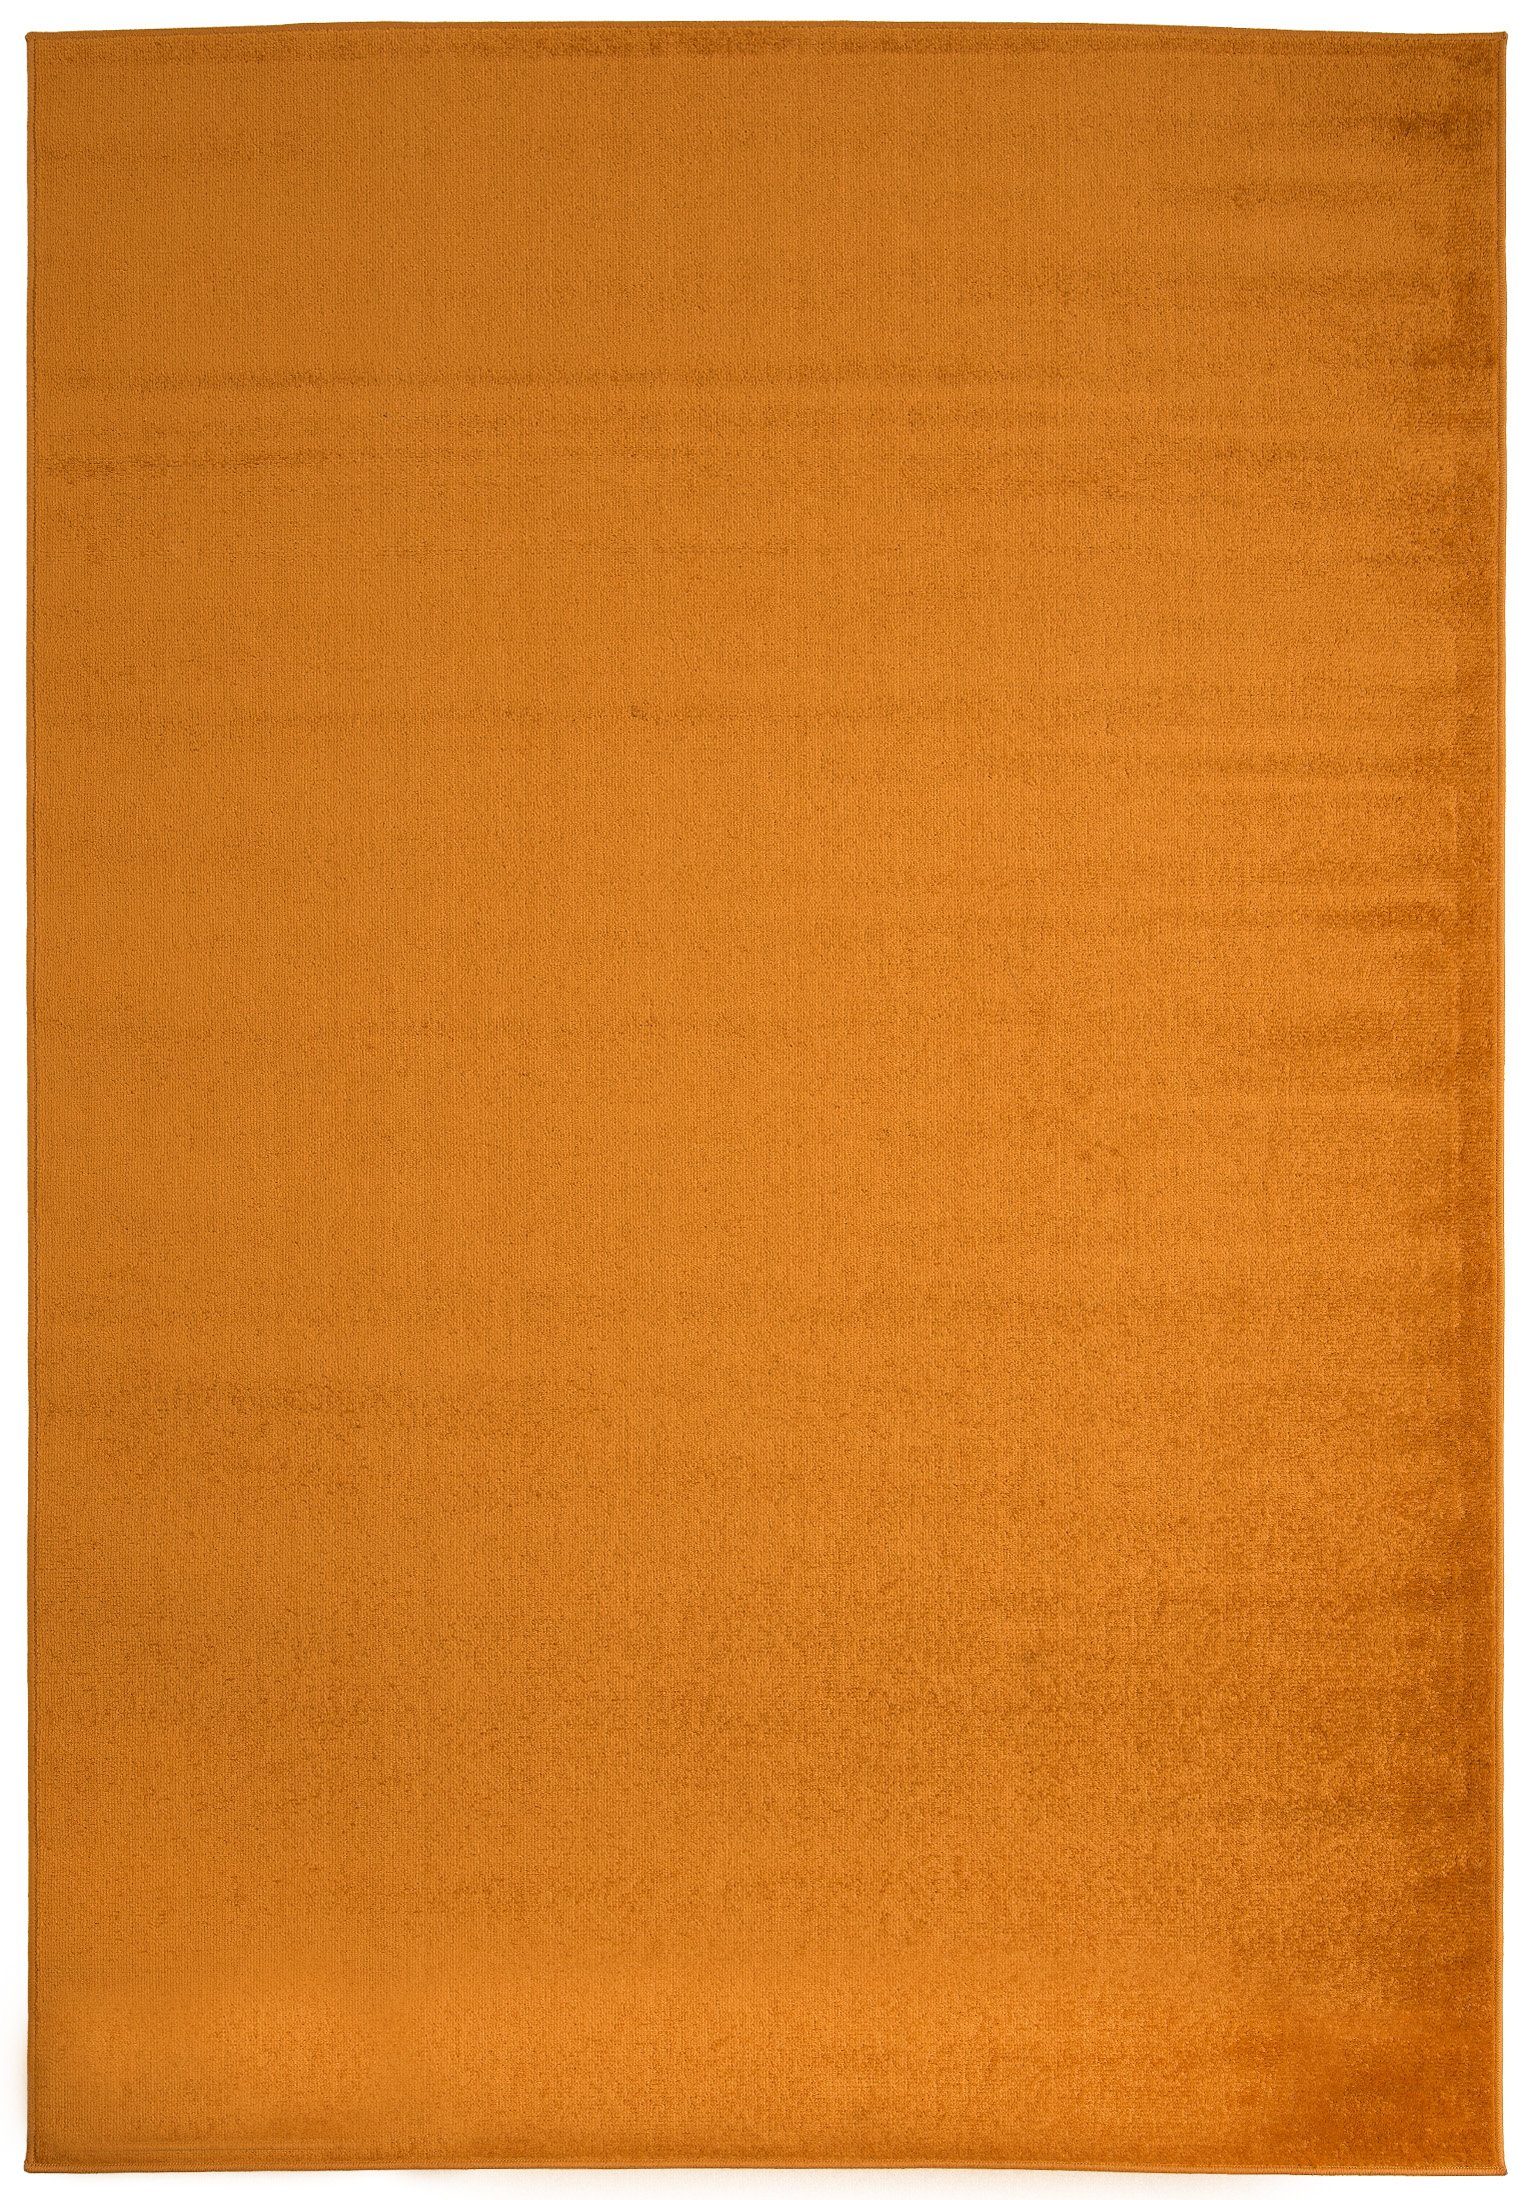 Designteppich Modern Teppich Einfarbig Muster Orange farbe - Kurzflor, Mazovia, 120 x 170 cm, Geeignet für Fußbodenheizung, Höhe 7 mm, Kurzflor